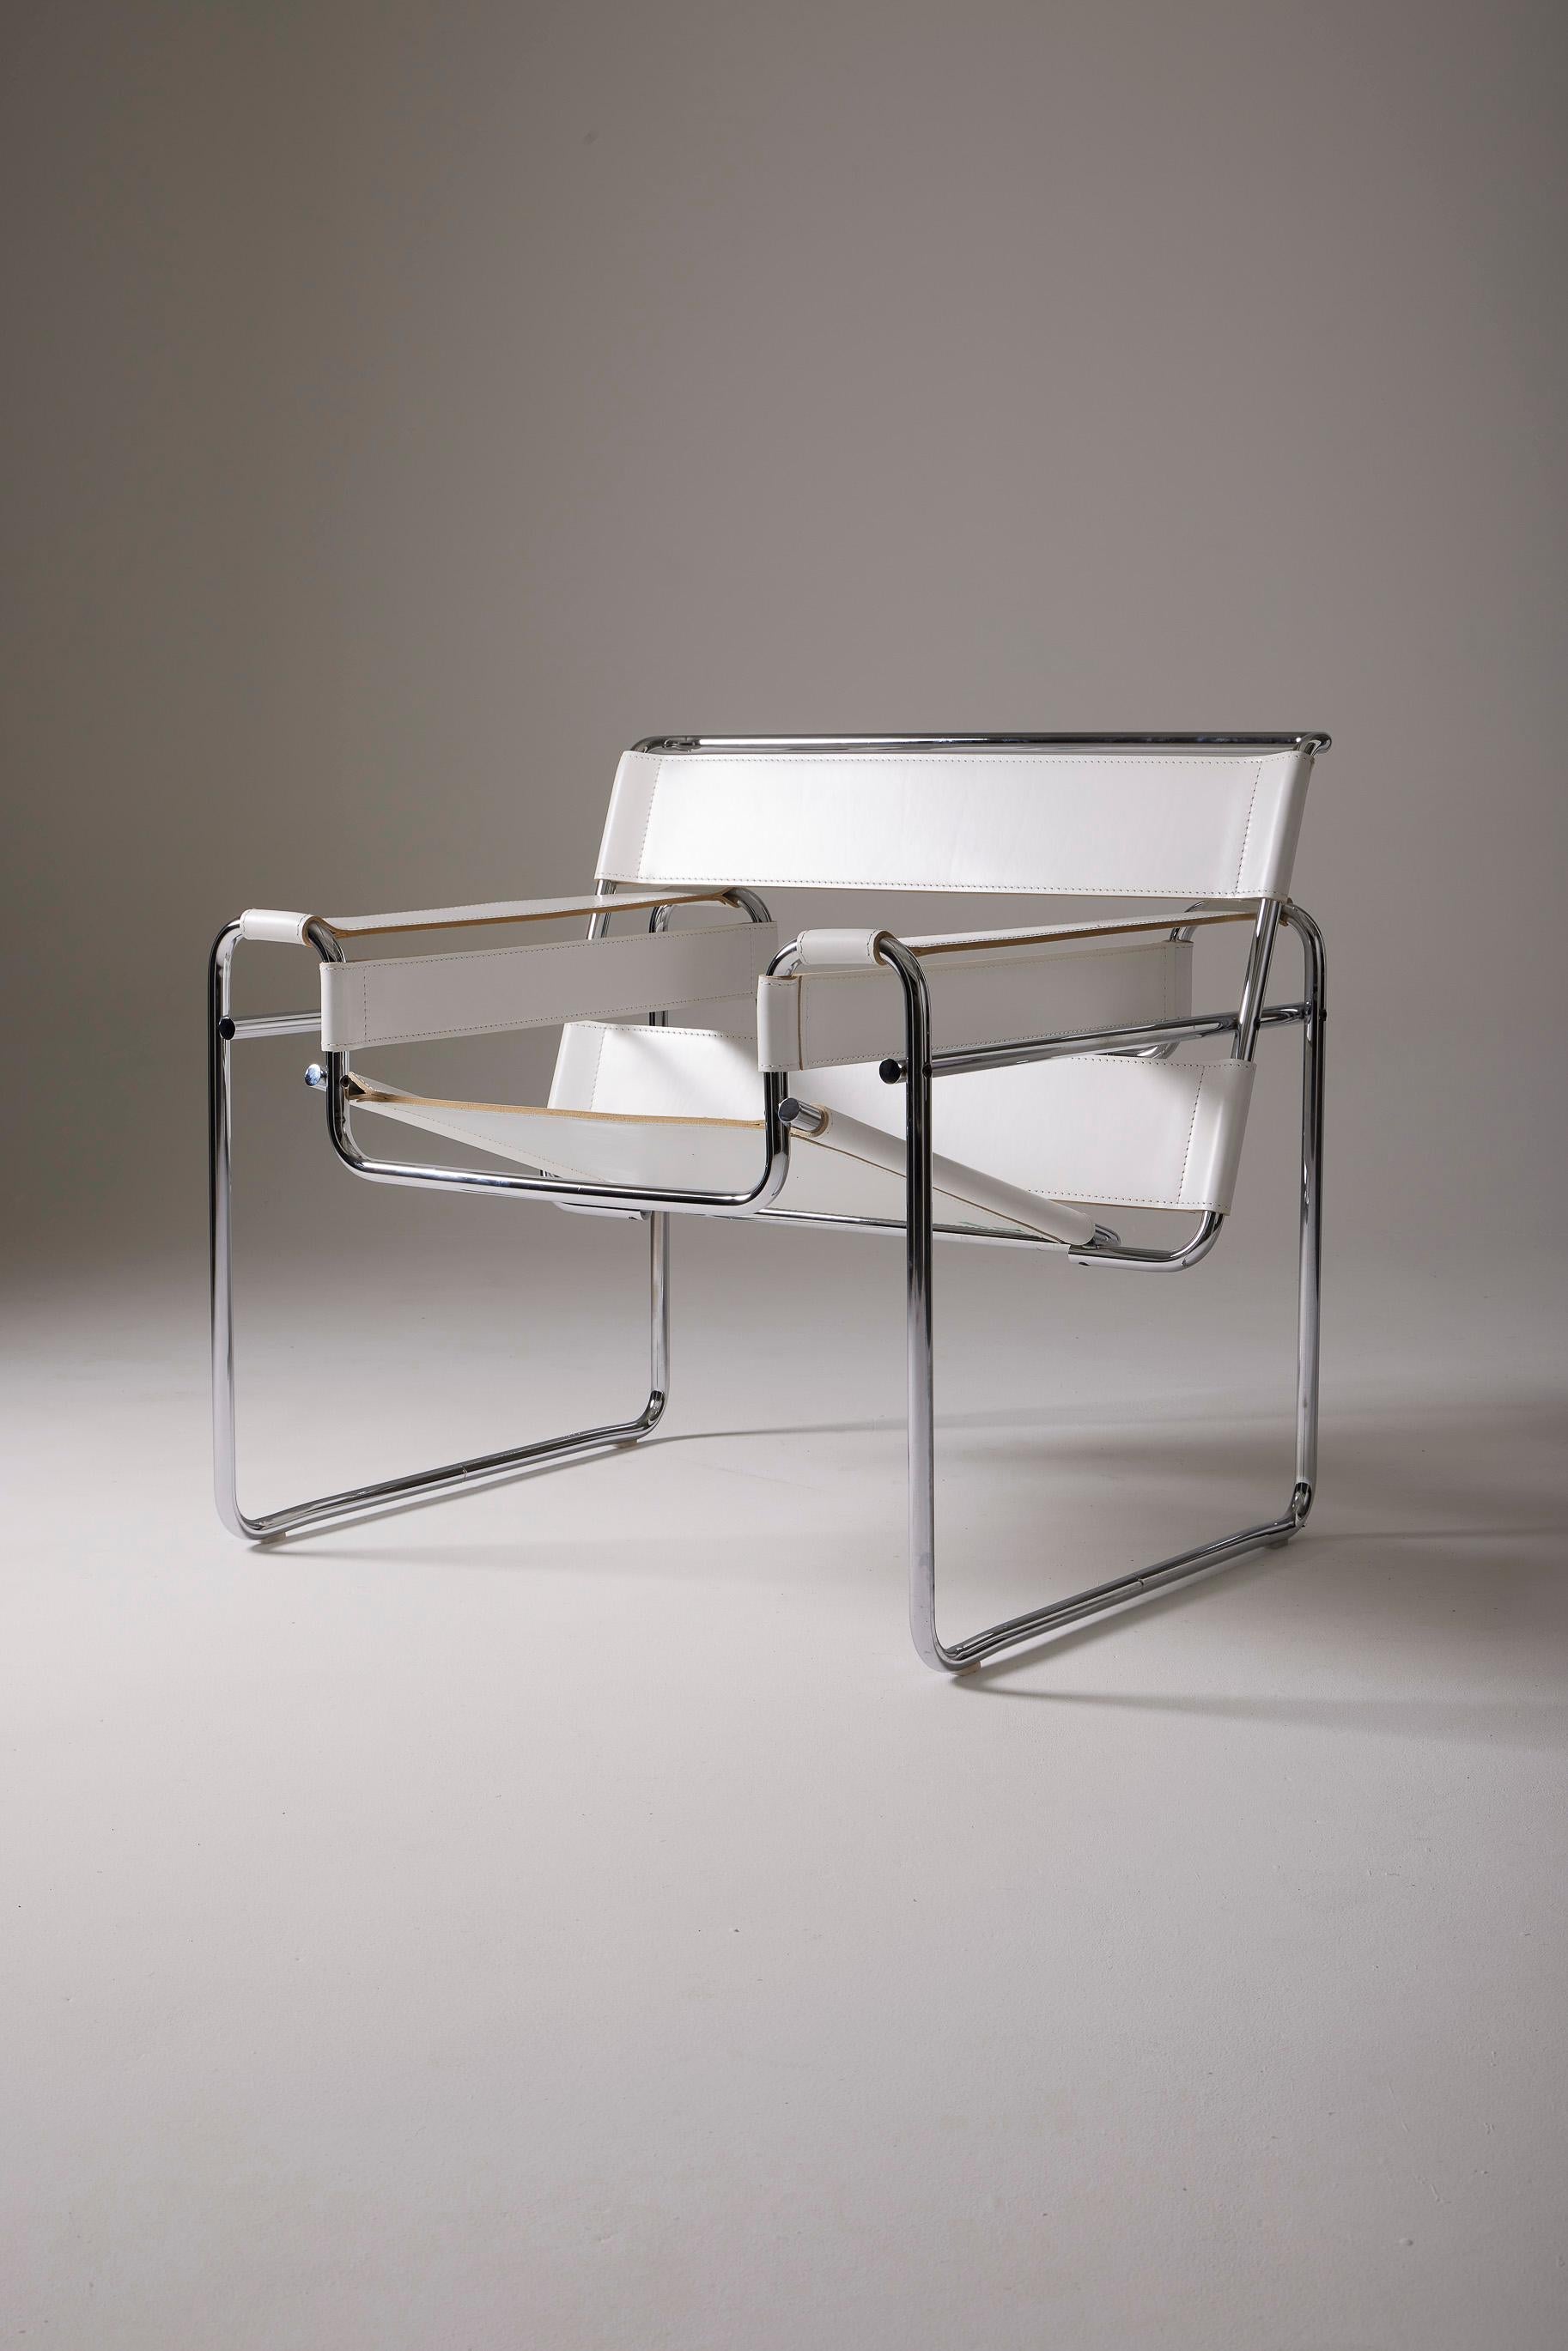 Der ikonische Wassily-Stuhl des Designers Marcel Breuer für Knoll. Er entwarf diesen Entwurf 1925 für die Wohnung des Malers Wassili Kandinsky, als dieser noch Student am Bauhaus war. Seine von einem Fahrrad inspirierte Rohrstruktur besteht aus